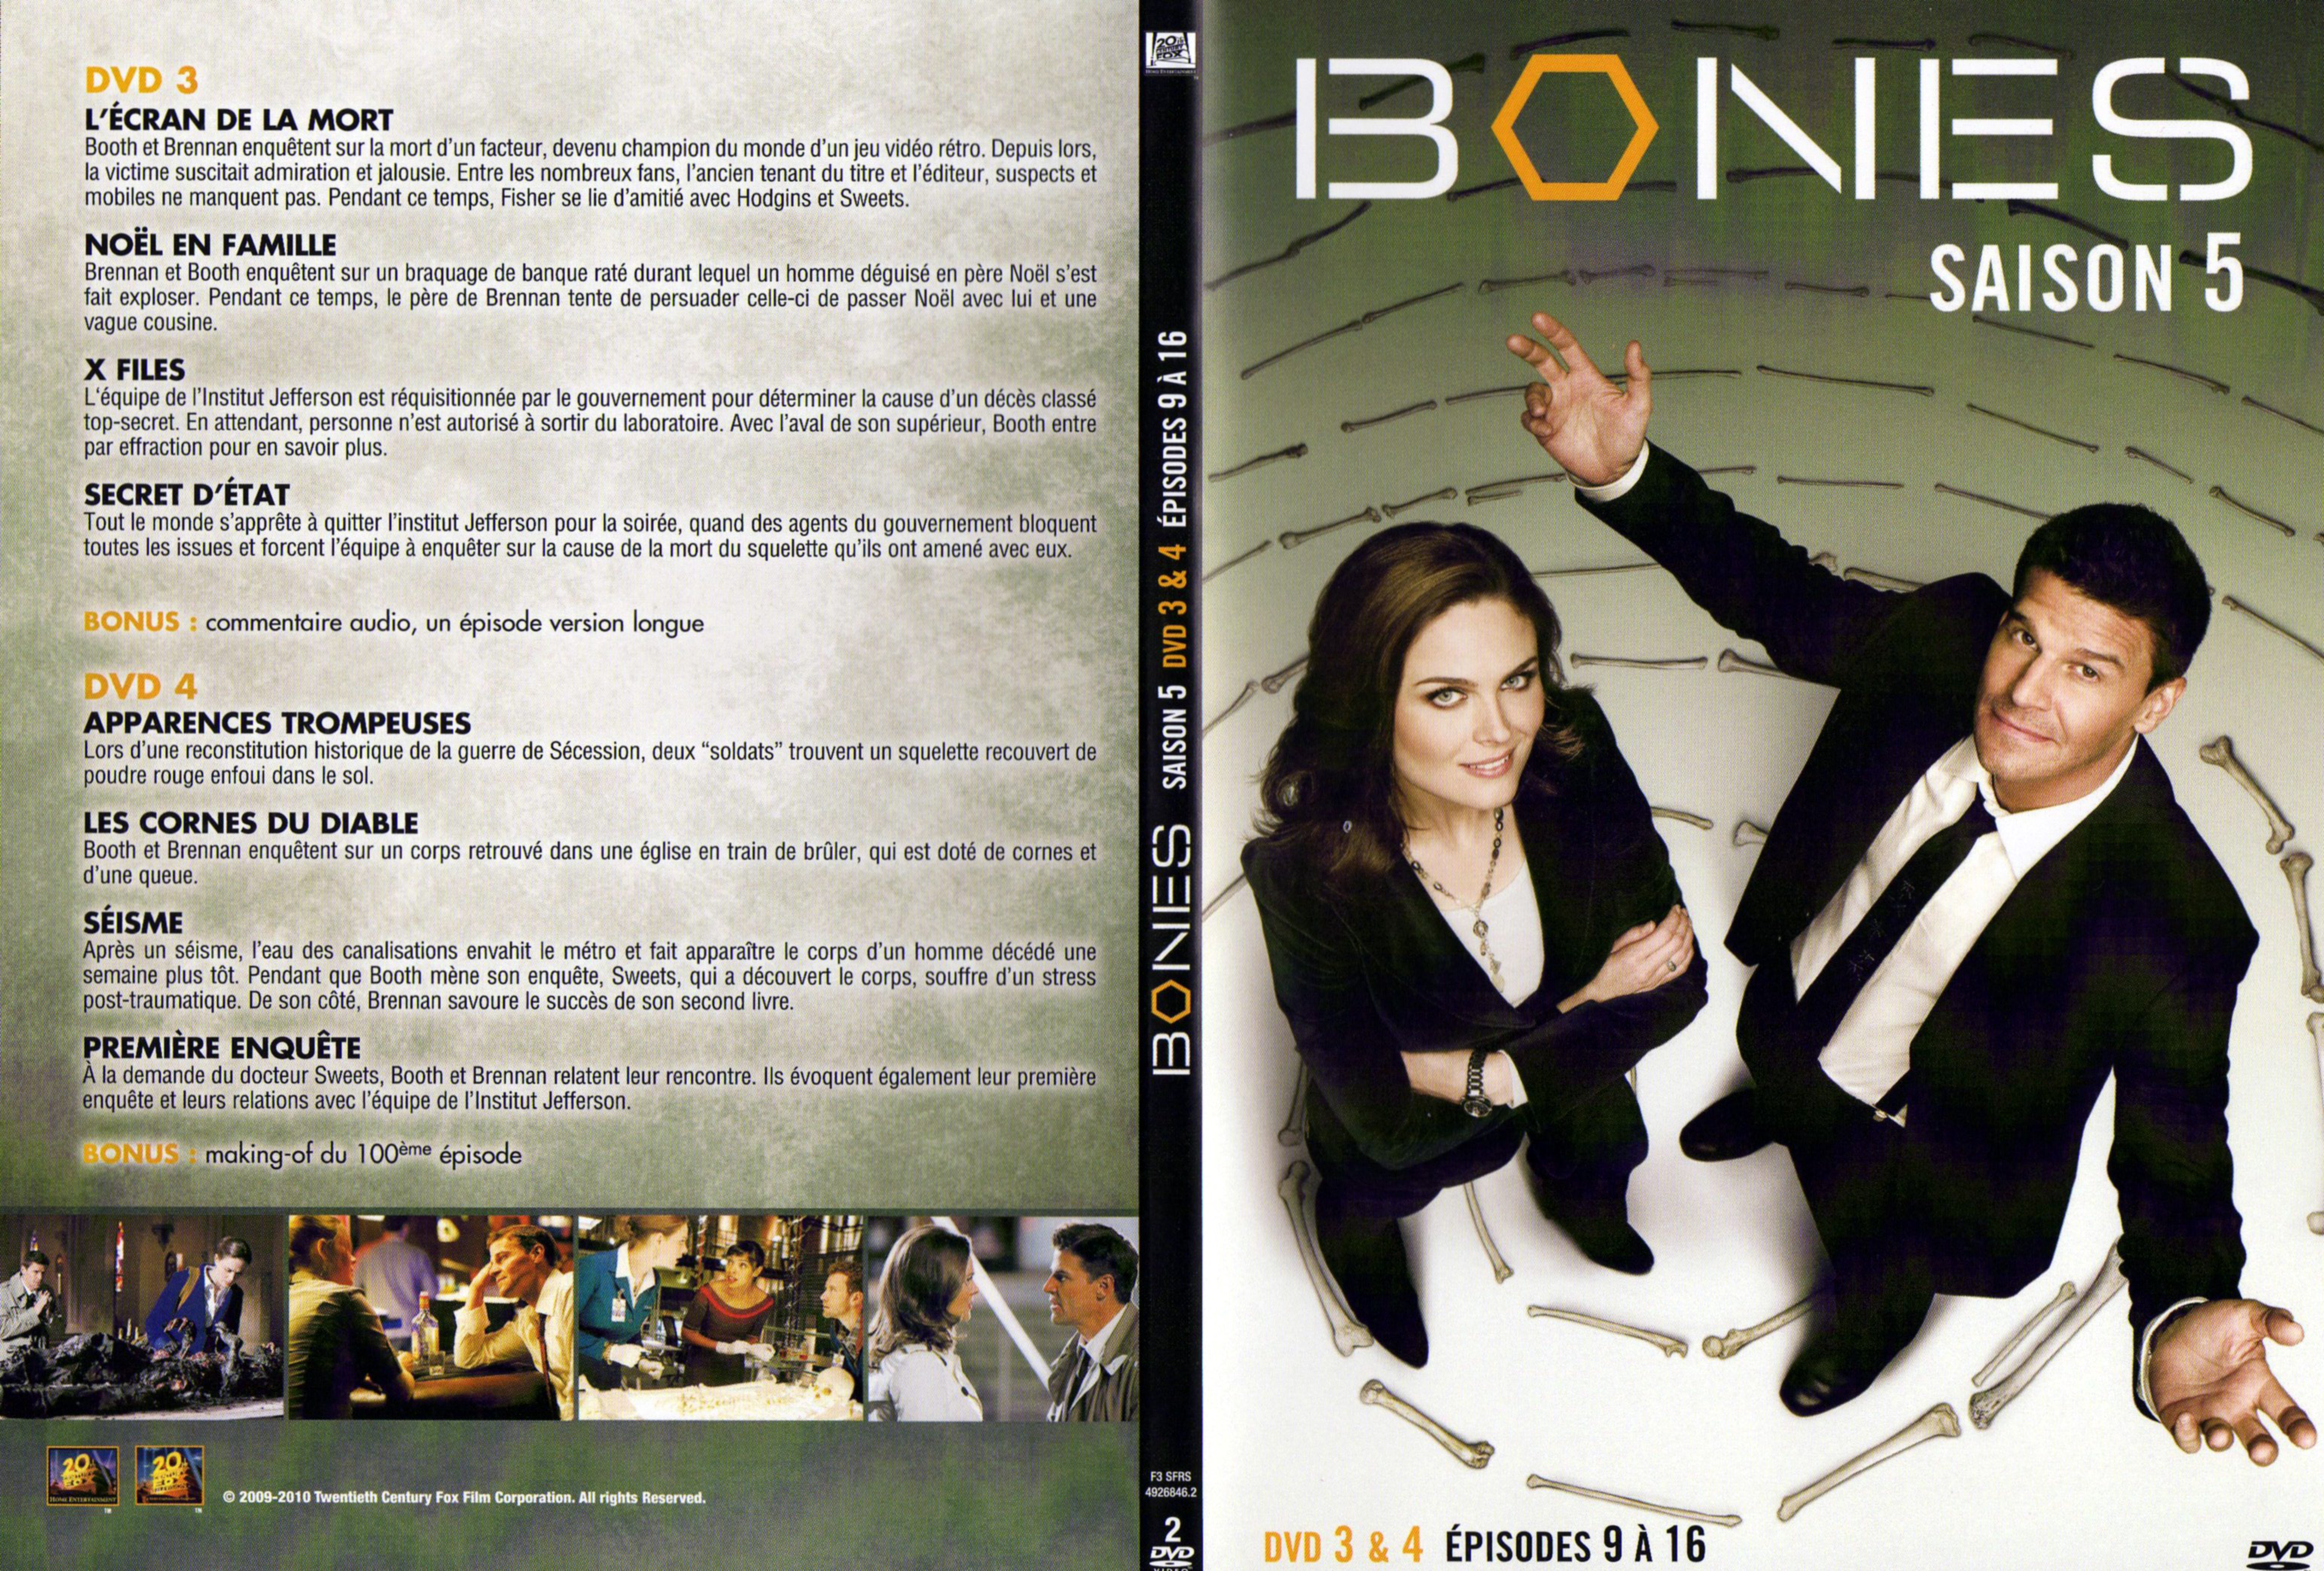 Jaquette DVD Bones Saison 5 DVD 2